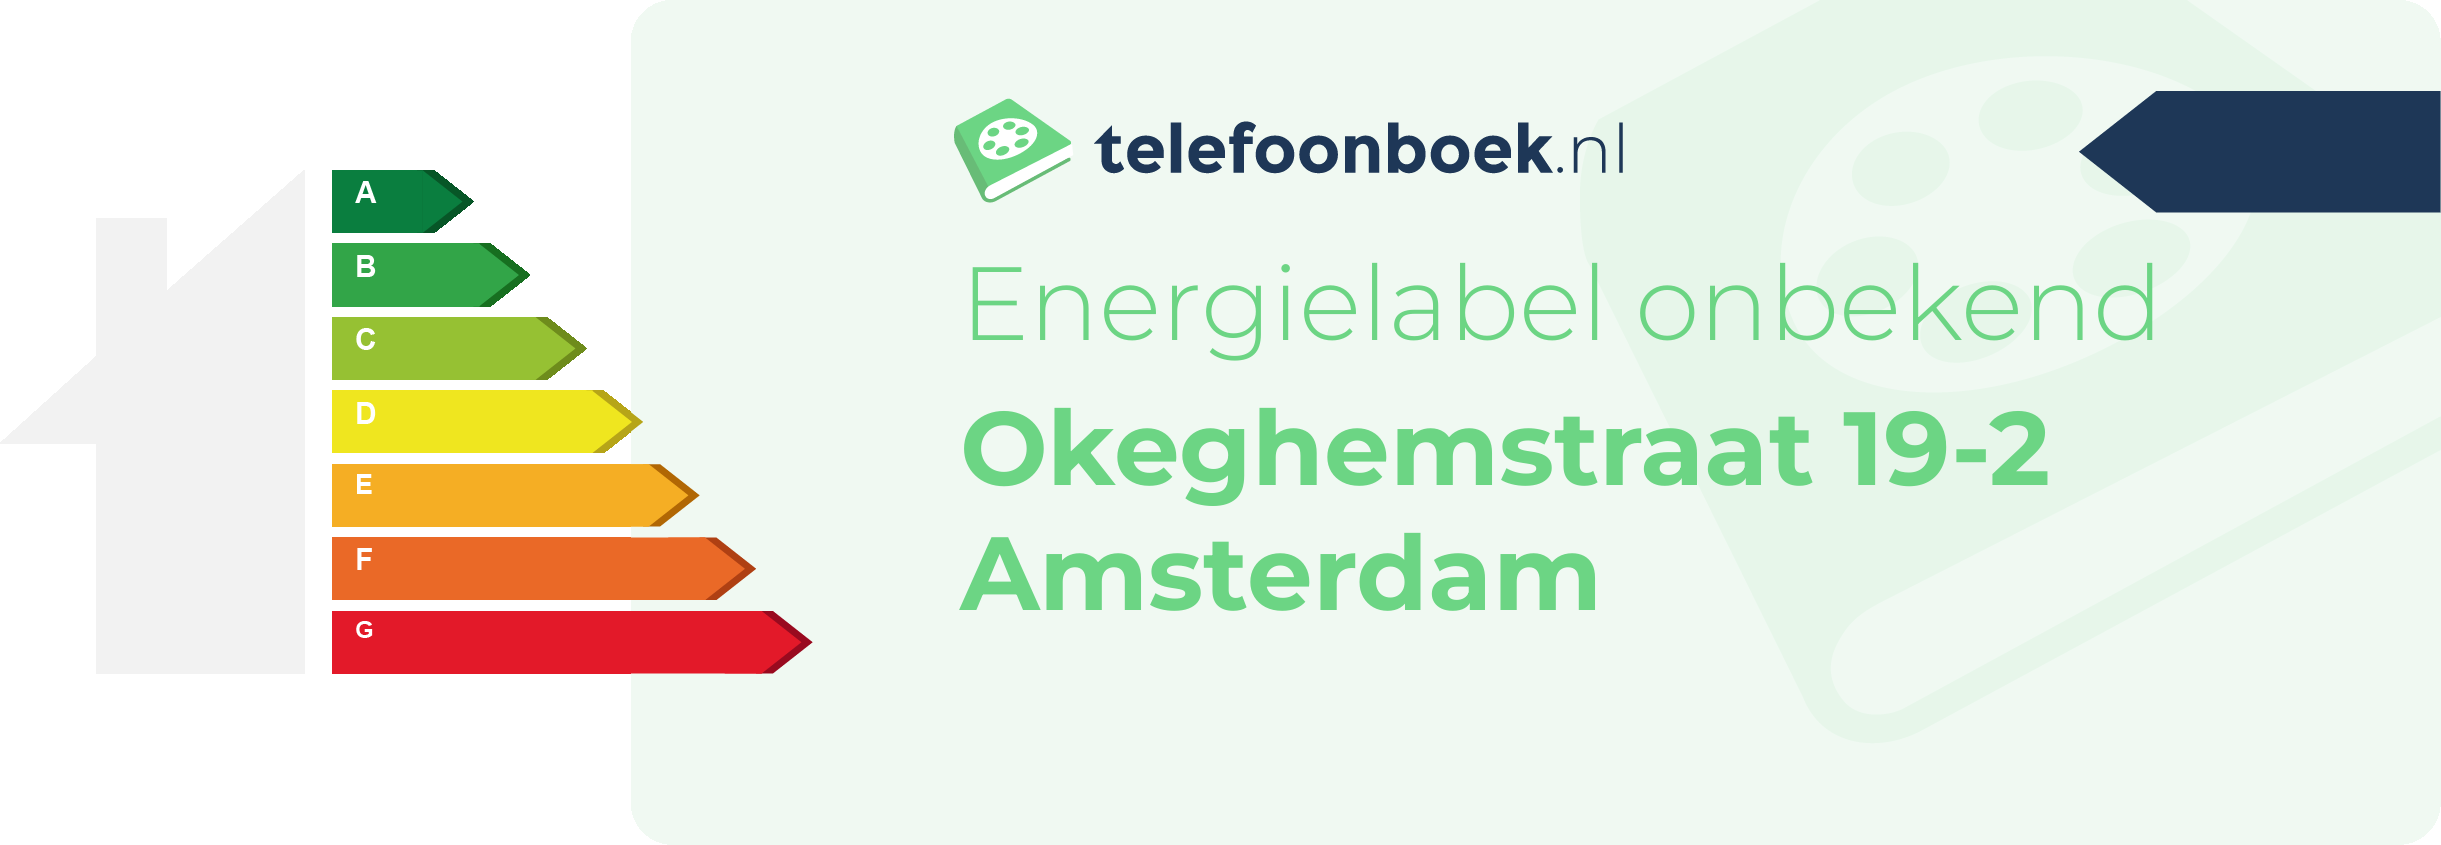 Energielabel Okeghemstraat 19-2 Amsterdam